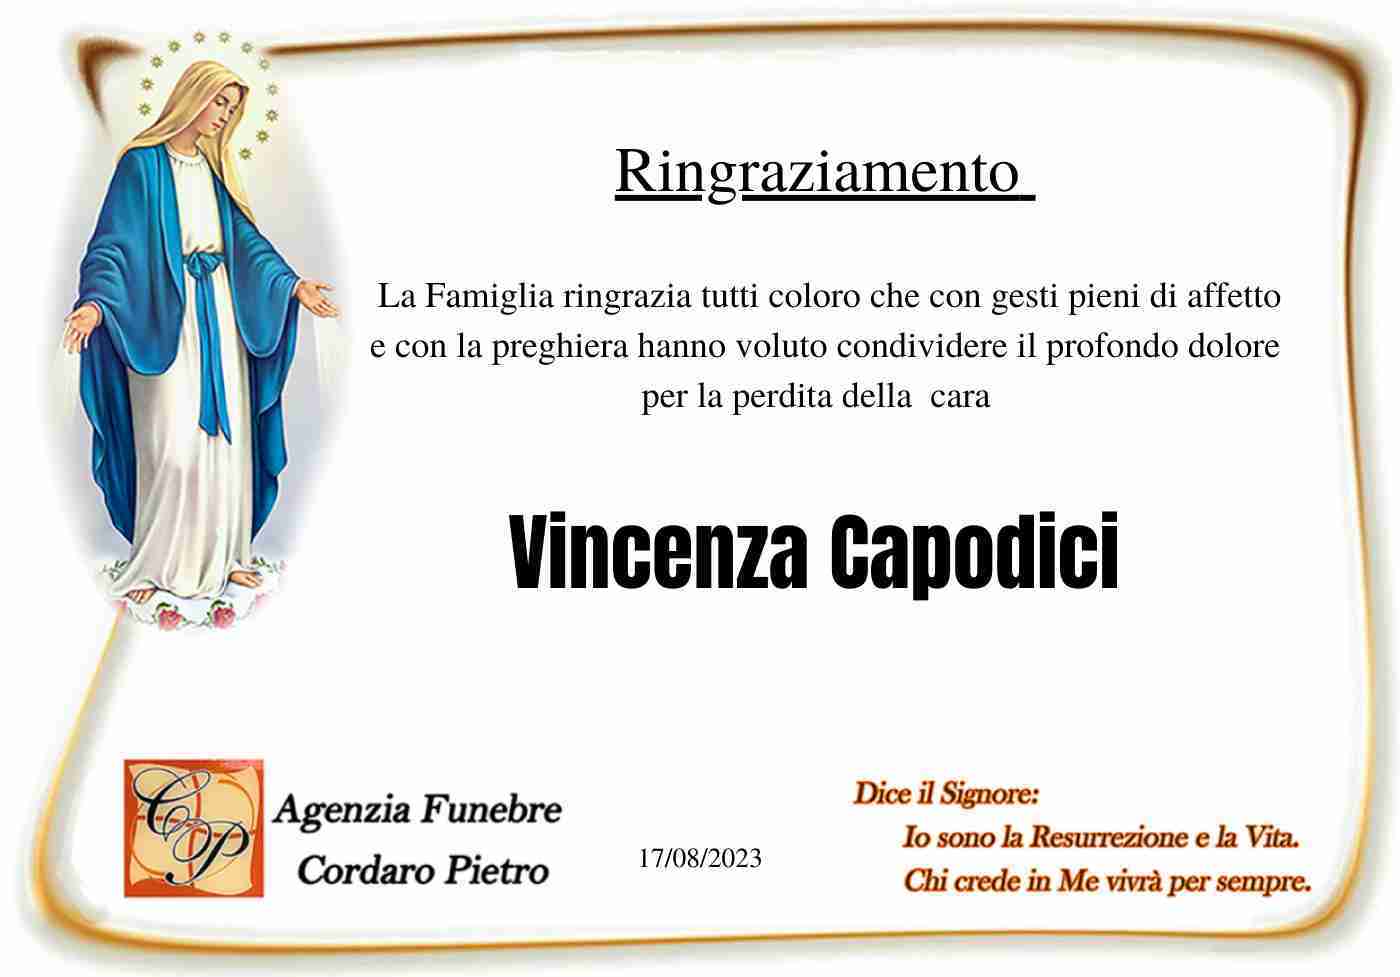 Vincenza Capodici